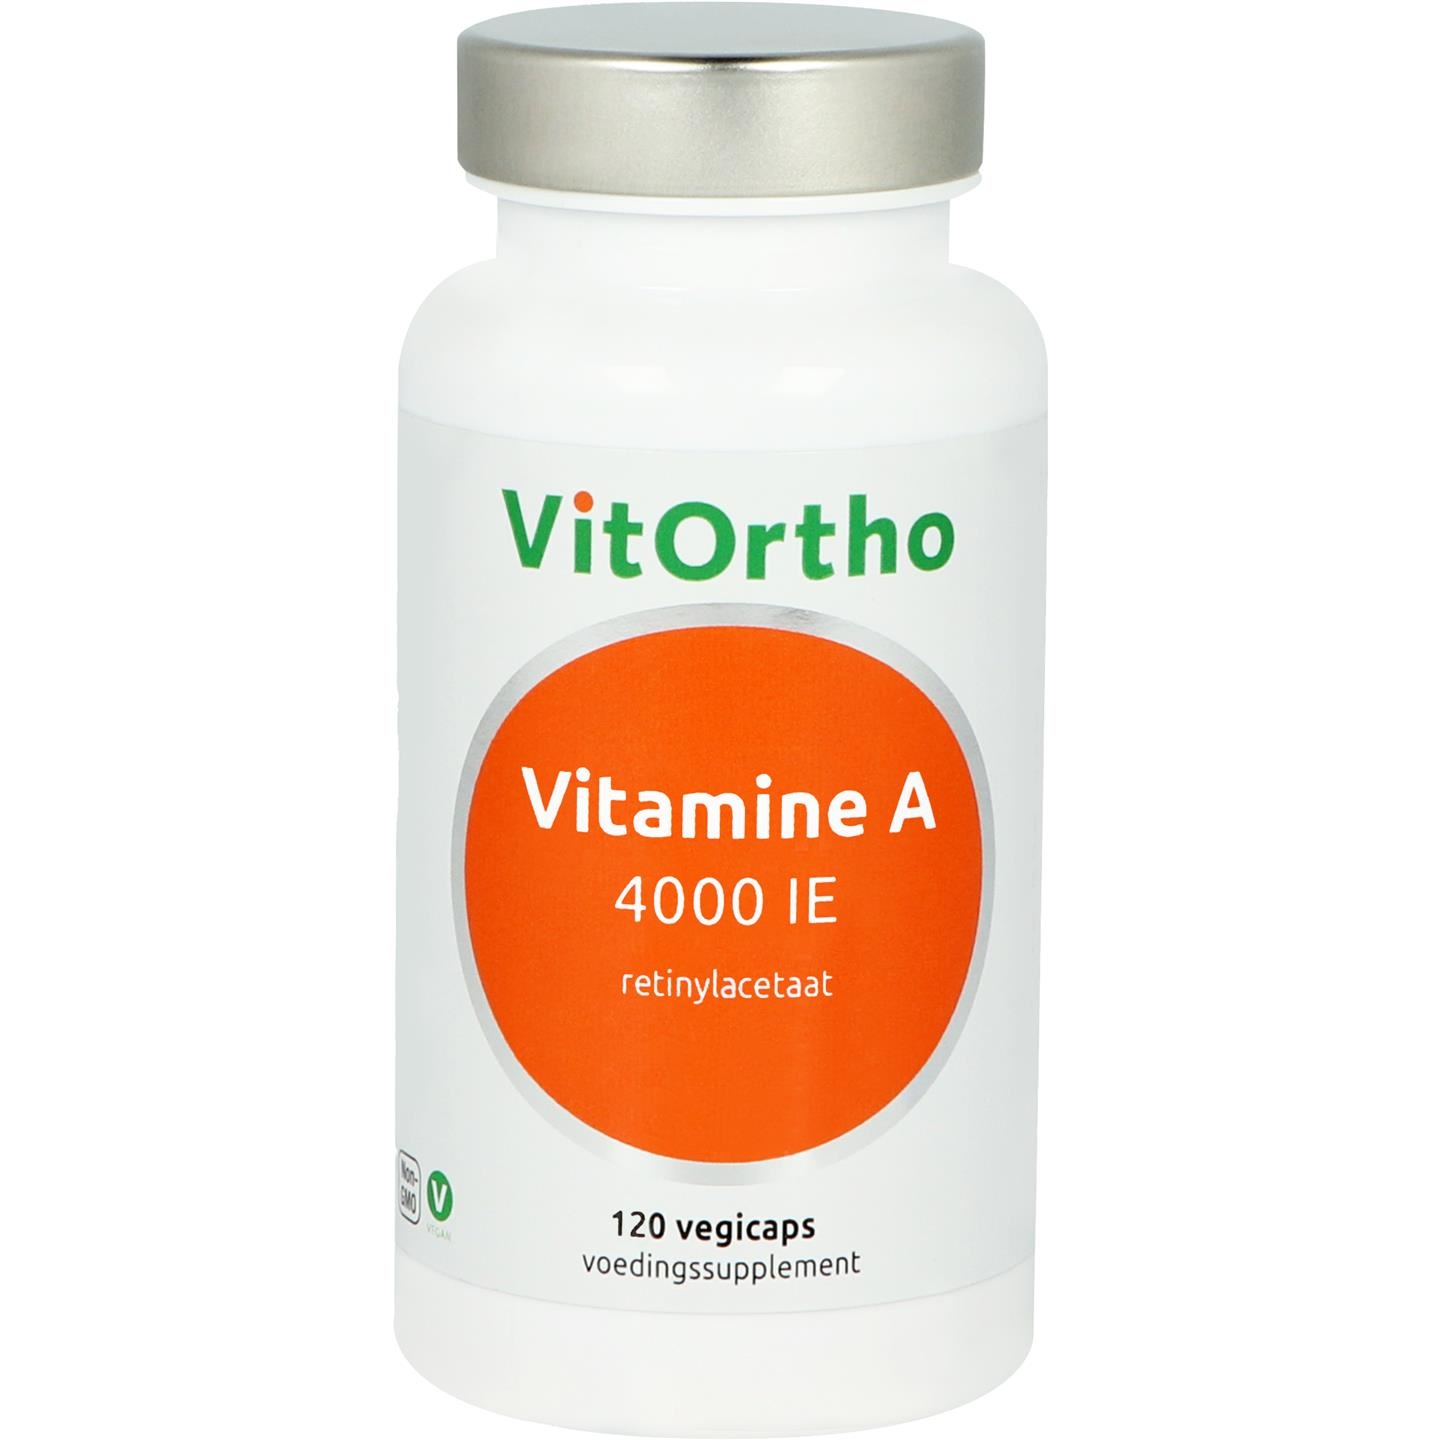 Vitortho VitOrtho Vitamin A 4000IE (120 Vegetarische Kapseln)